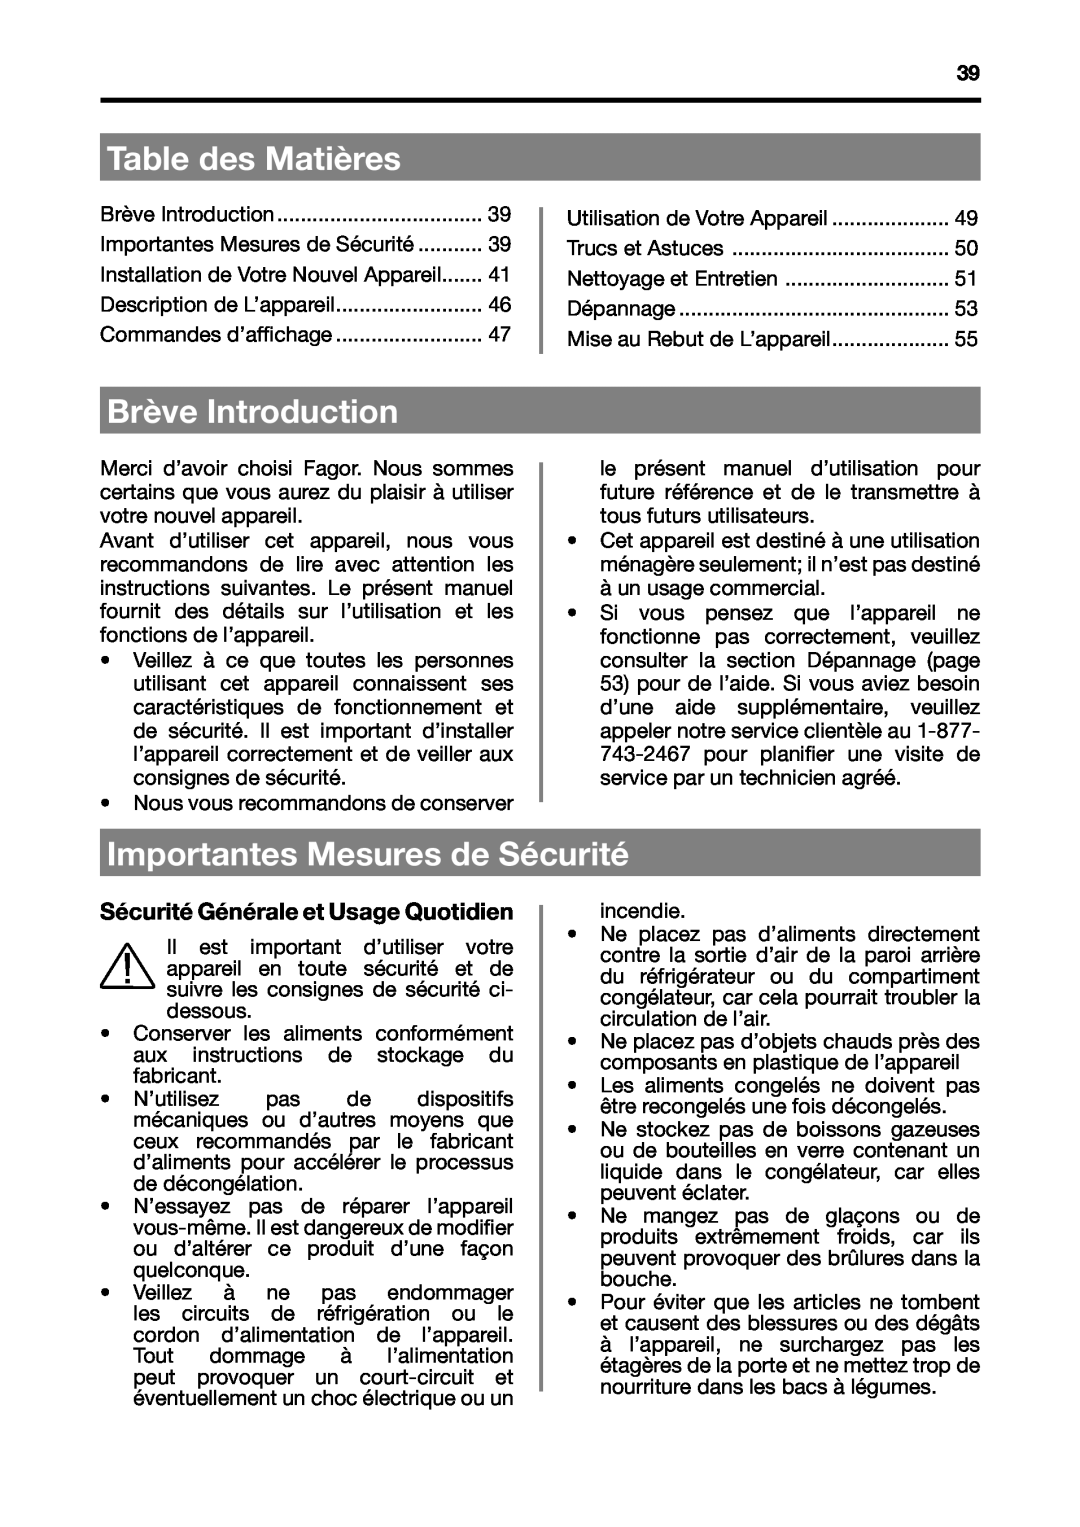 Fagor America BMF-200X manual Table des Matières, Brève Introduction, Importantes Mesures de Sécurité 